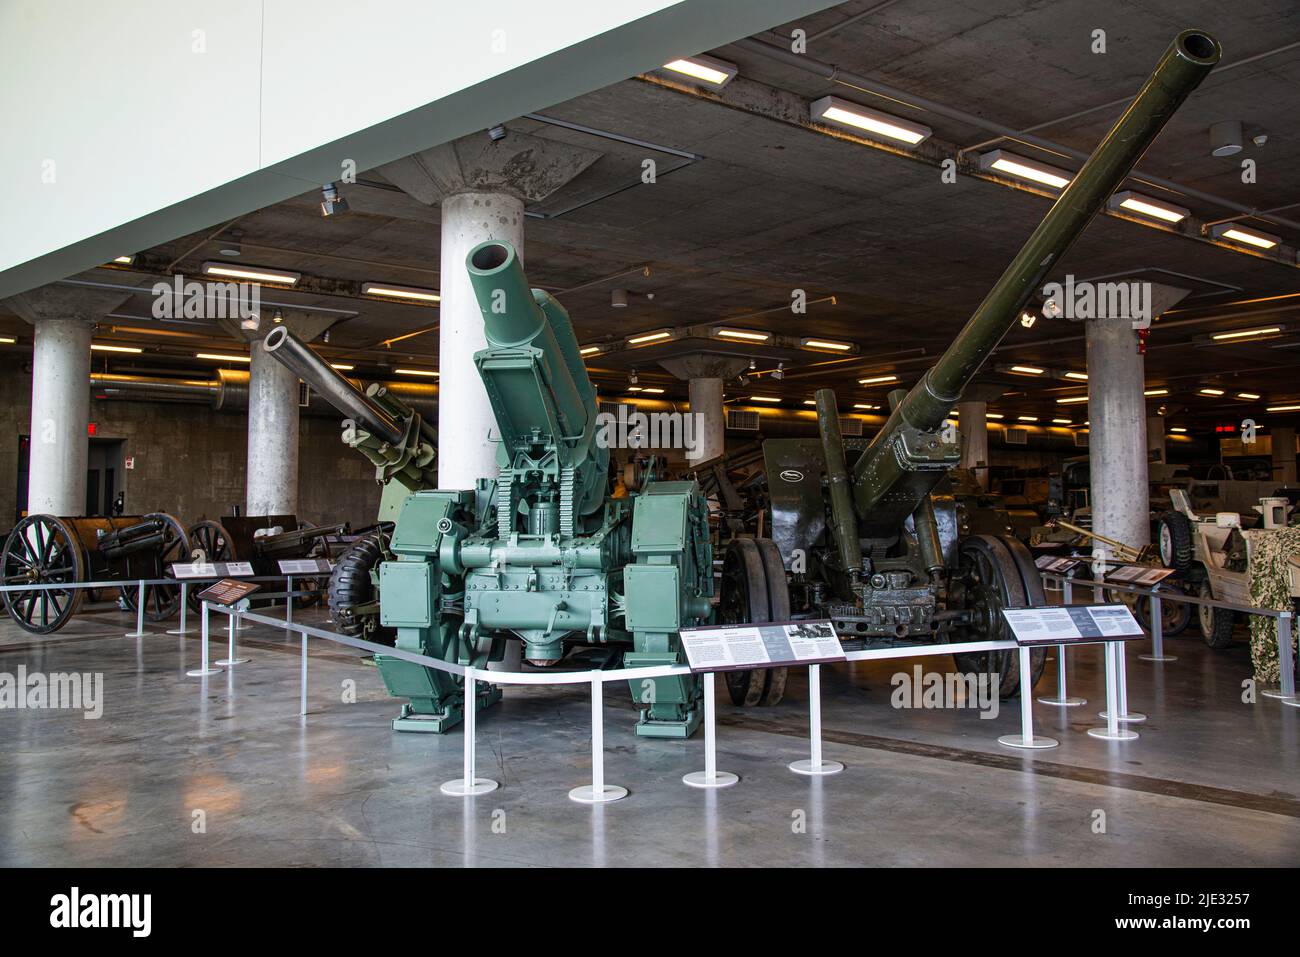 Ottawa, Canada - 17 avril 2022 : machines et armes de guerre exposées au Musée canadien de la guerre à Ottawa Banque D'Images